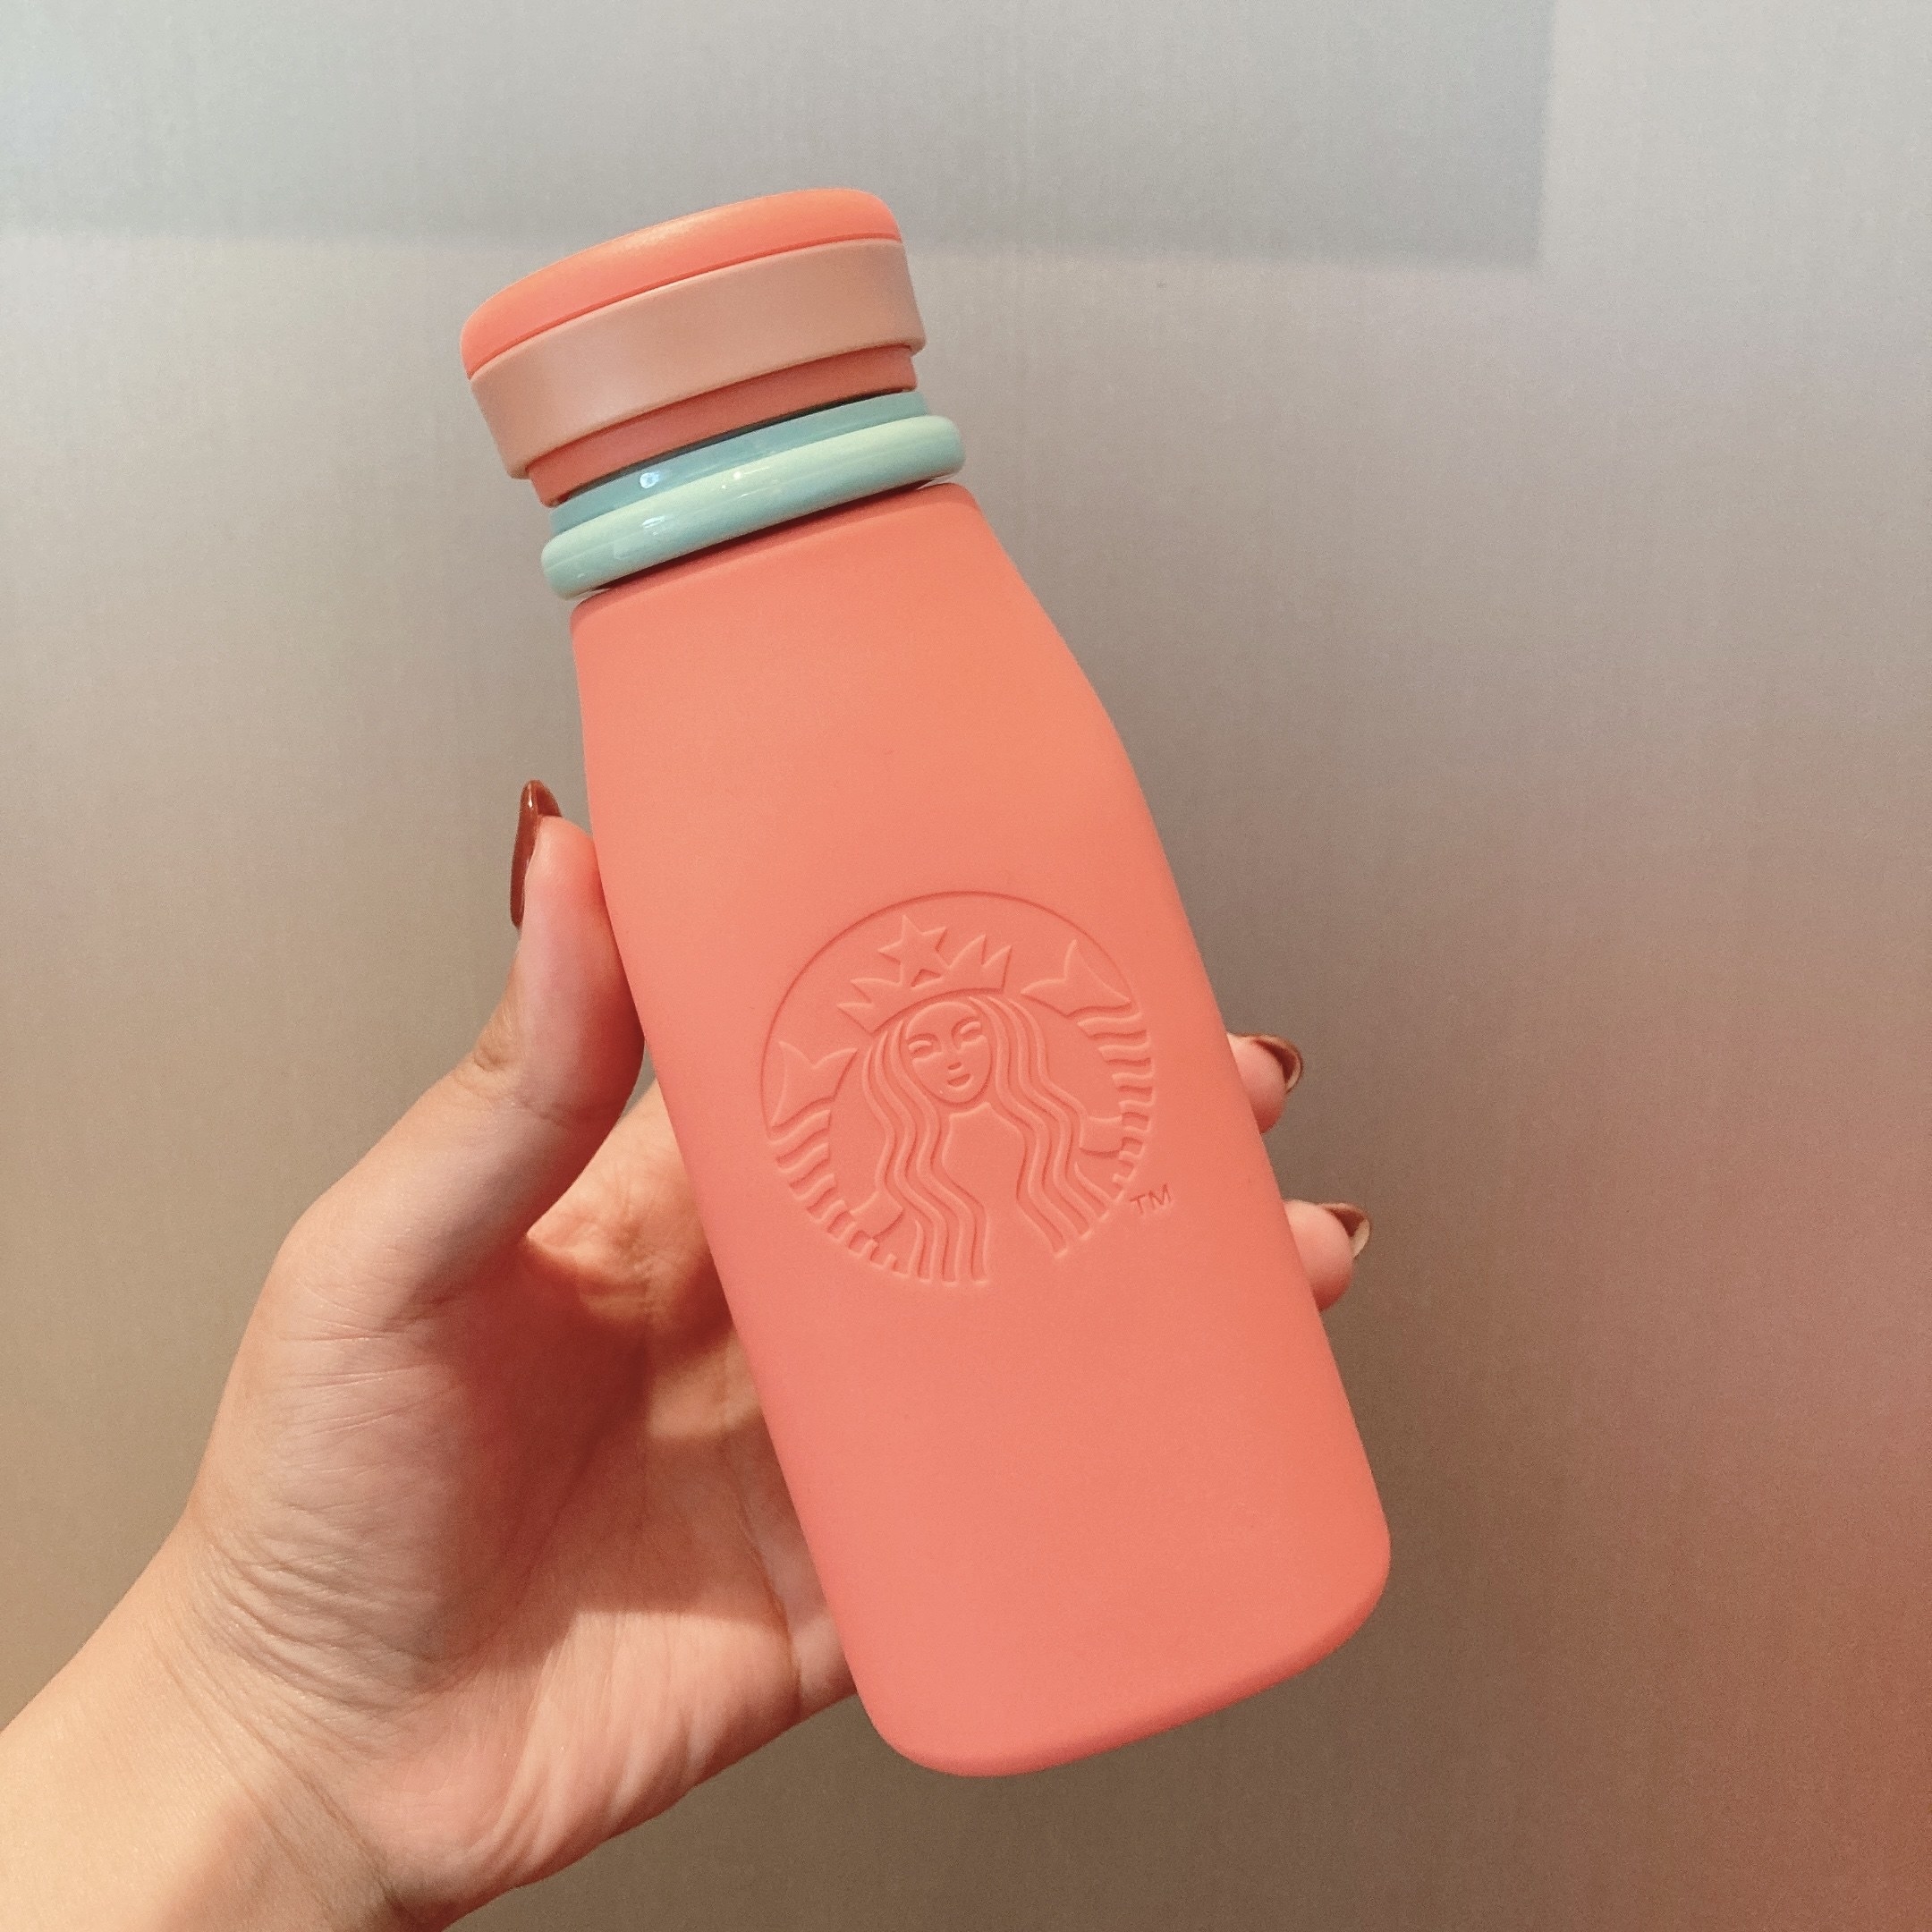 Starbucks Coffee（スターバックスコーヒー）のおすすめボトル「おりたたみシリコンボトルコーラルピンク355ml」